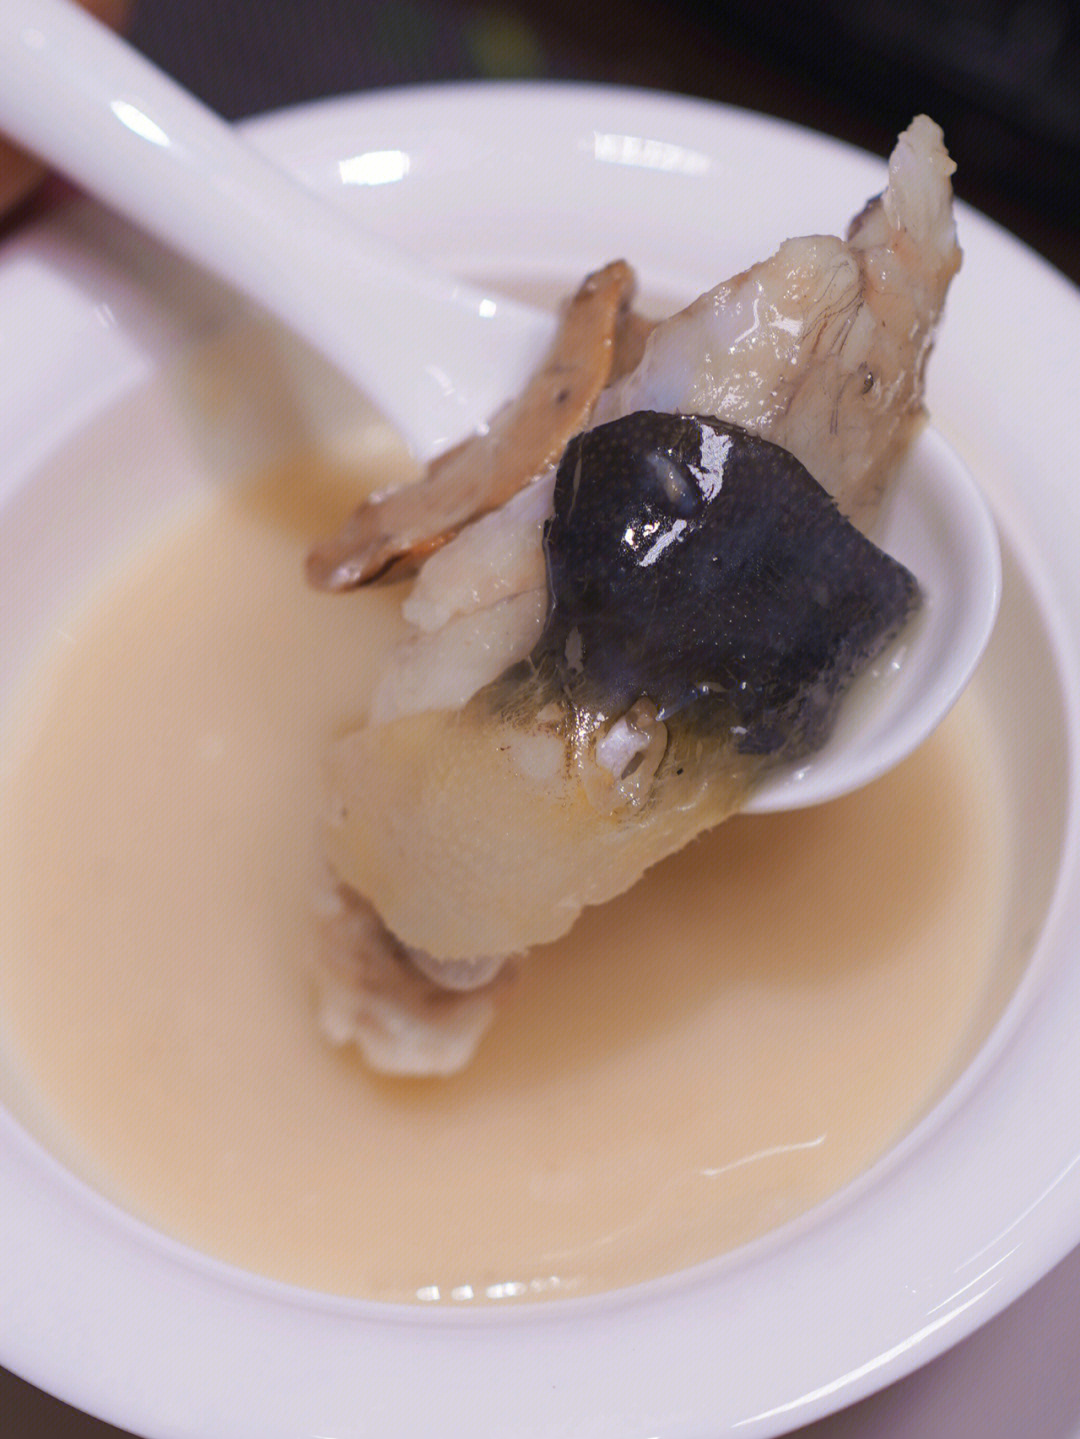 白汤炖的河豚肉紧而甜,鱼皮布满胶质和刺,最好吃的是内脏,这种含有